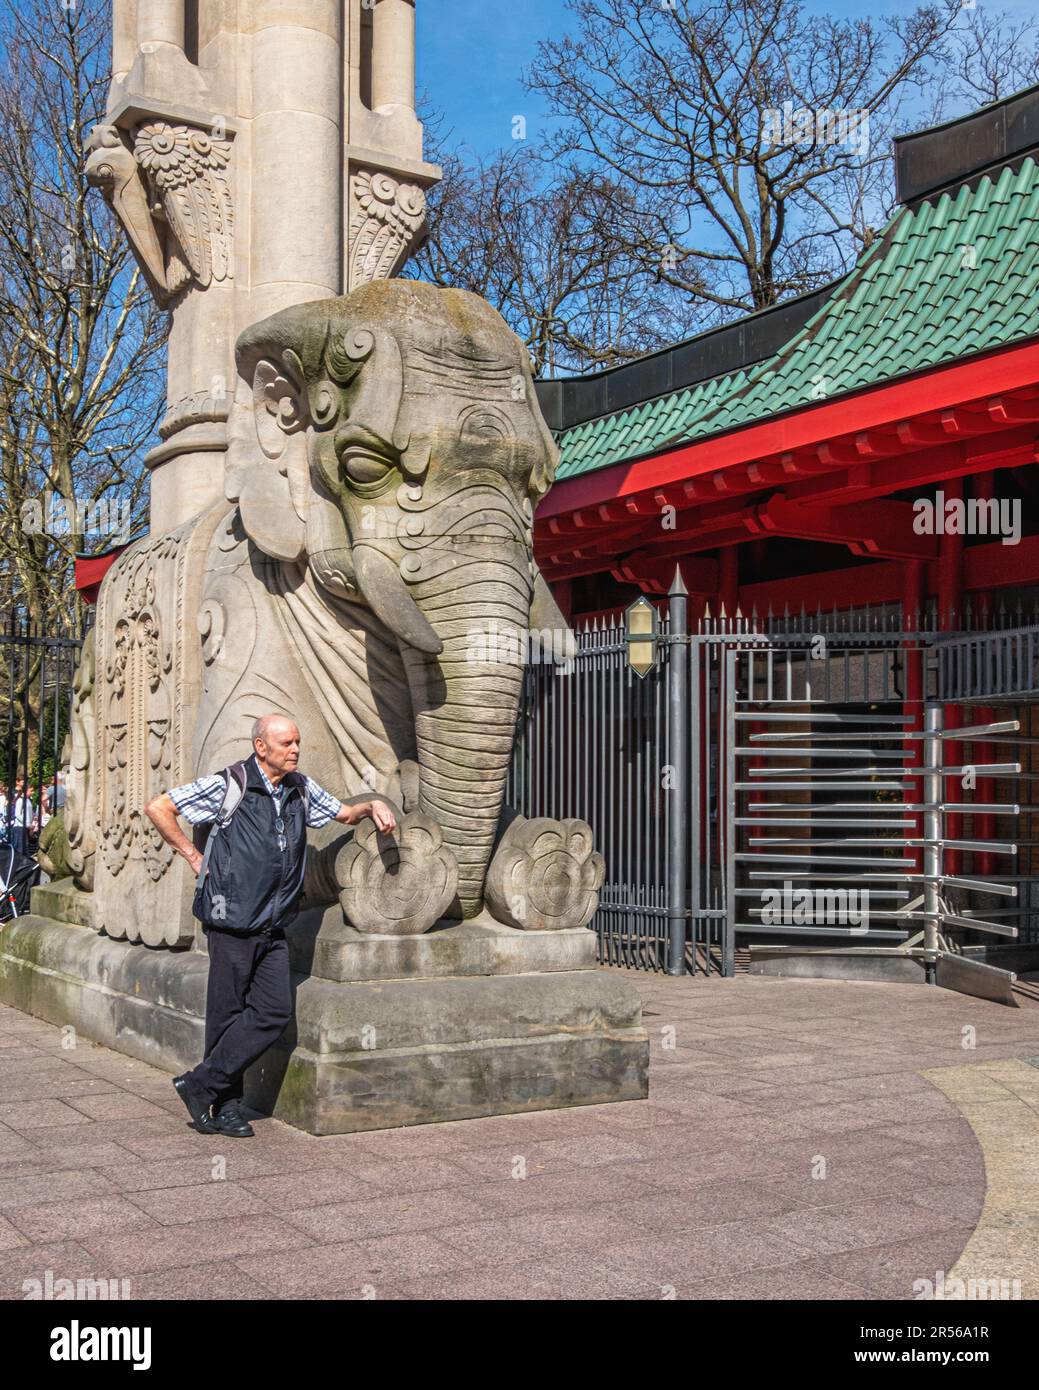 Ingresso allo zoo, l'uomo anziano si trova accanto alla scultura a grandezza naturale degli elefanti, Budapester strasse, Tiergarten, Mitte, Berlino Foto Stock